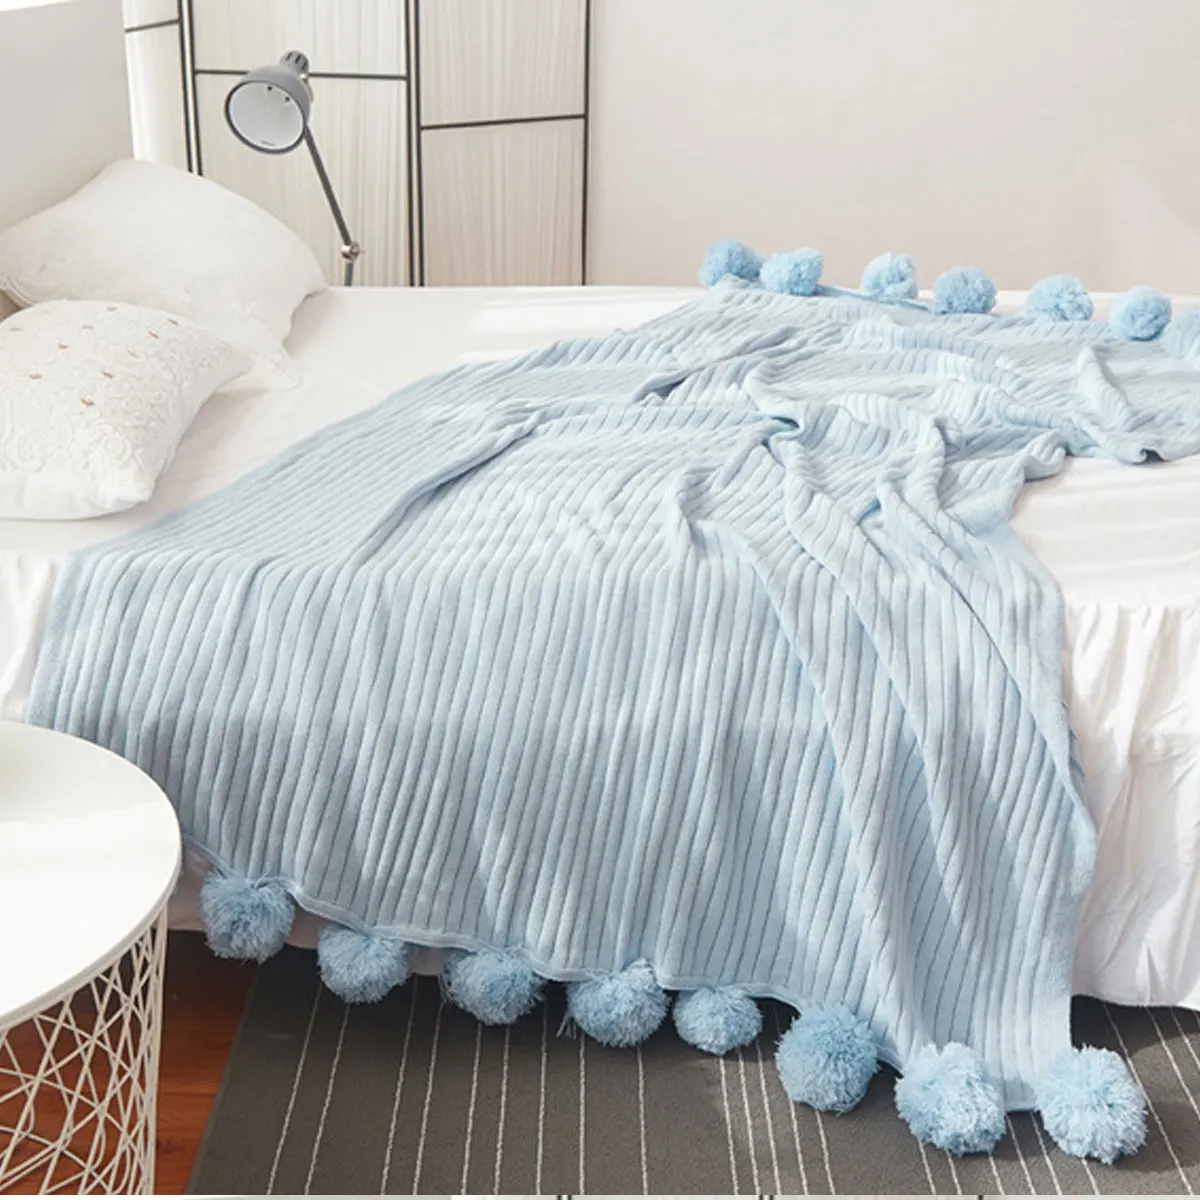 5 цветов, качественное хлопковое вязаное одеяло с помпонами, 100*105 см, для детей, взрослых, двойной размер, для кровати, трикотажная кровать, диван, домашний декор